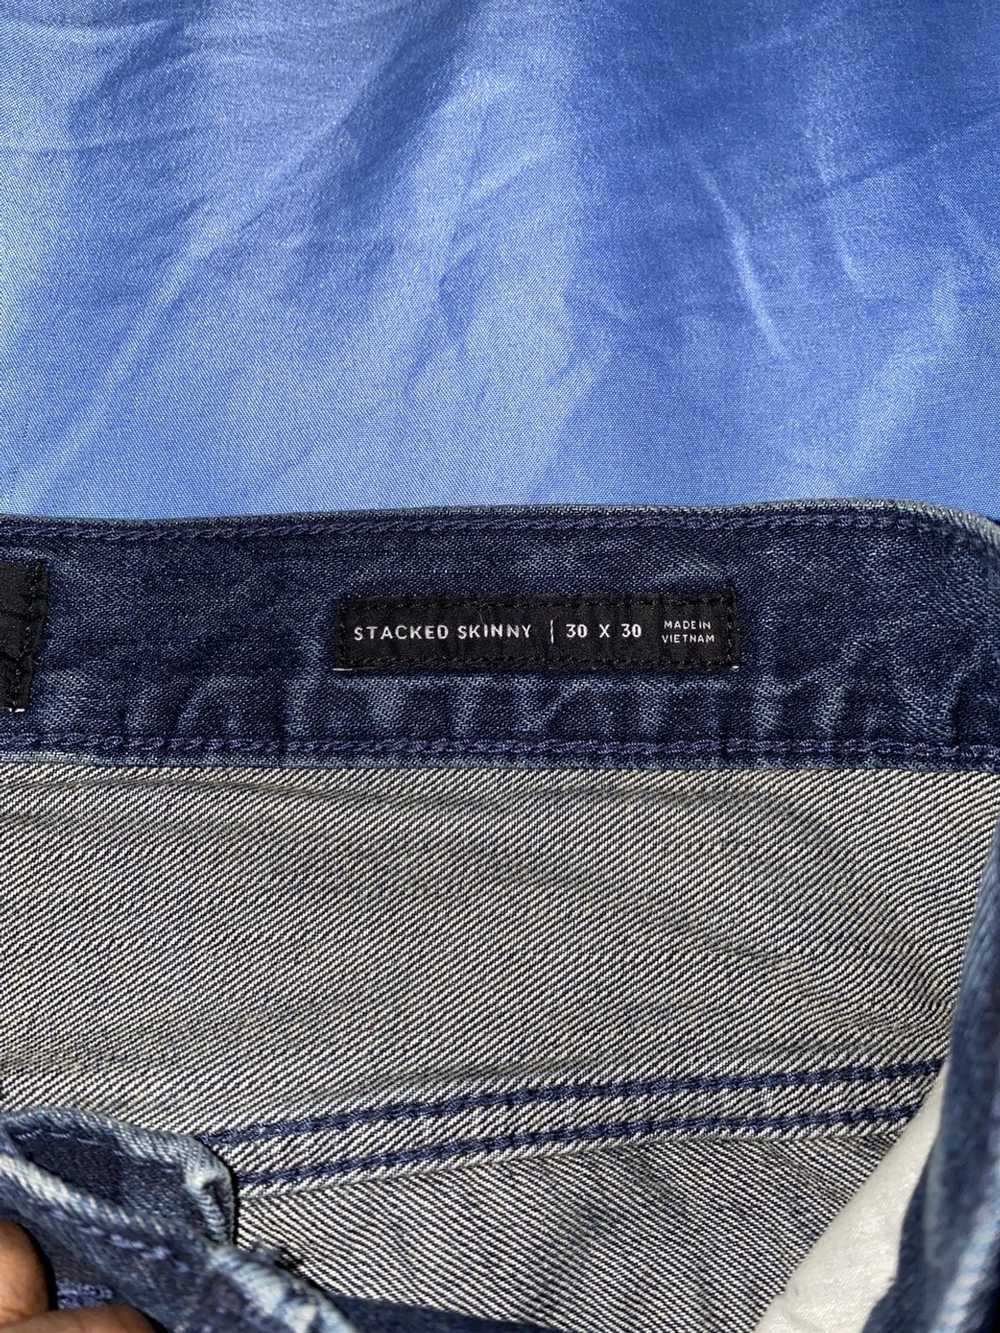 Pacsun Pacsun denim Jeans indigo fade - image 3